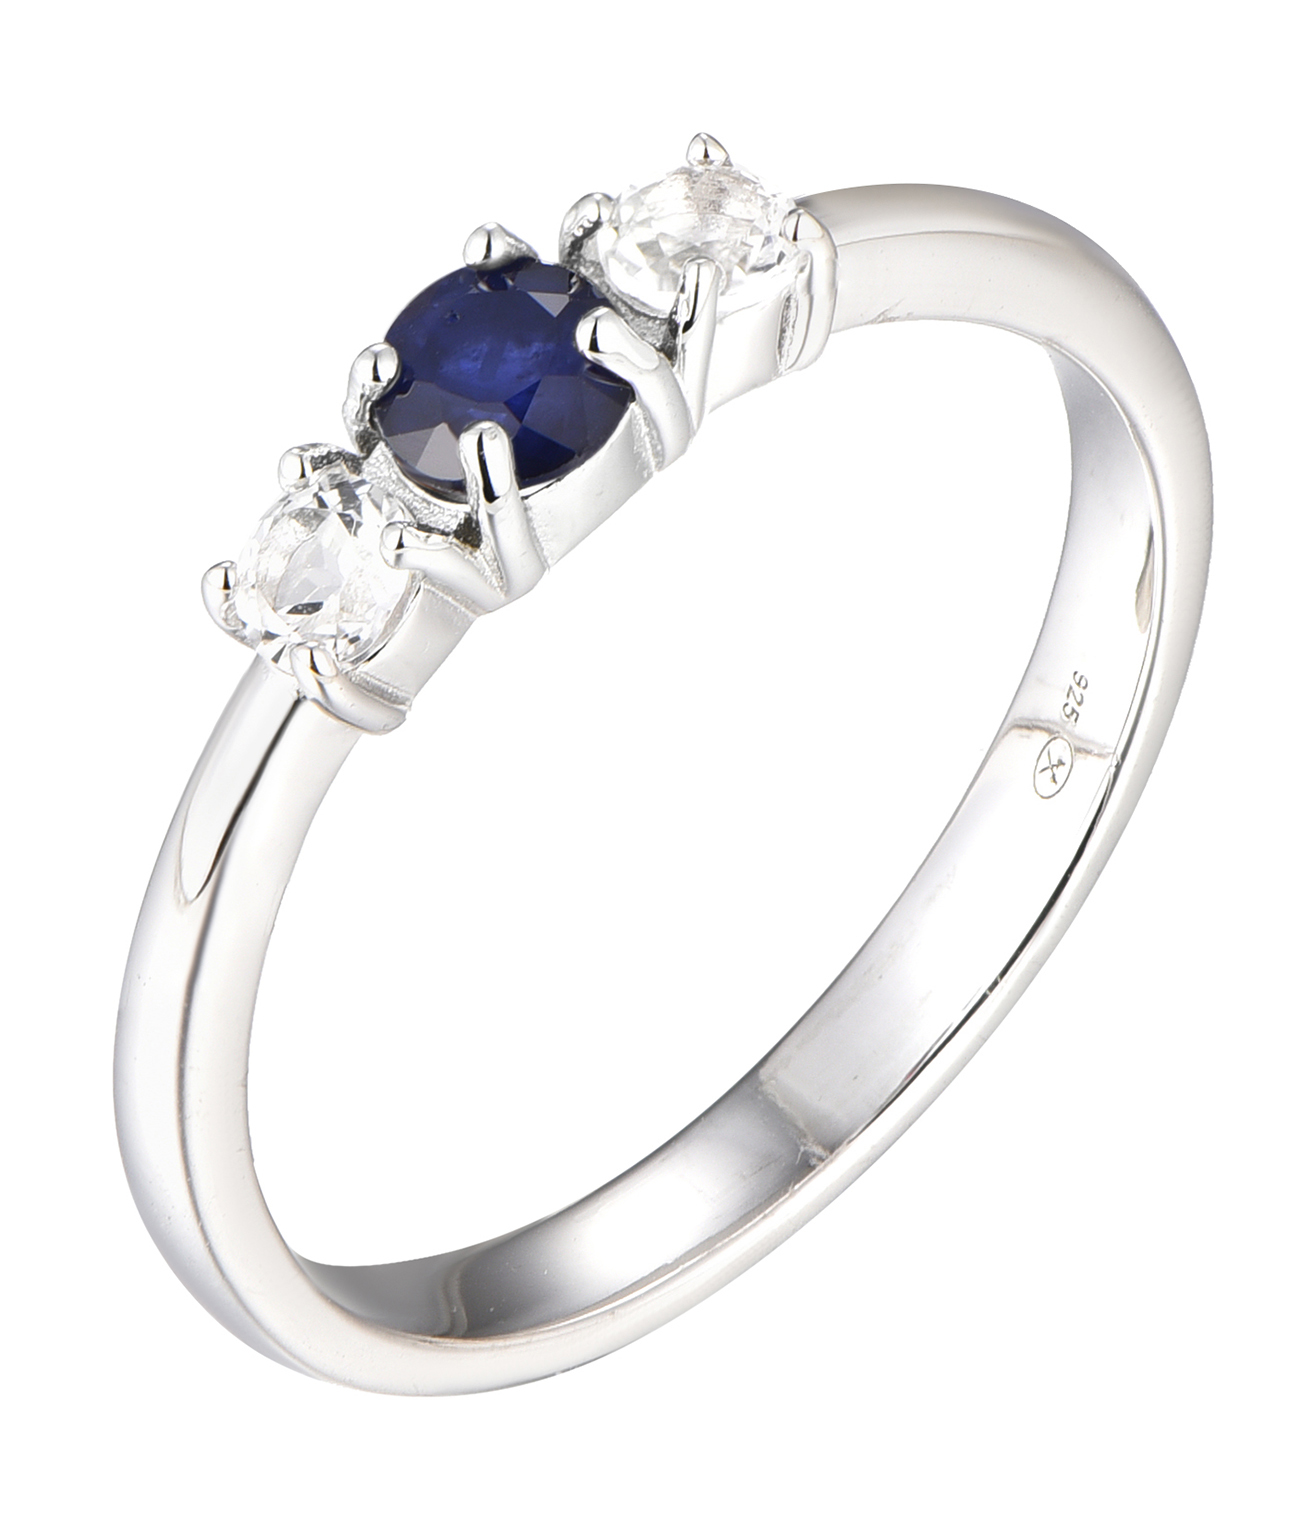 Brilio Silver Blýštivý stříbrný prsten se safírem Precious Stone SR09003B 58 mm